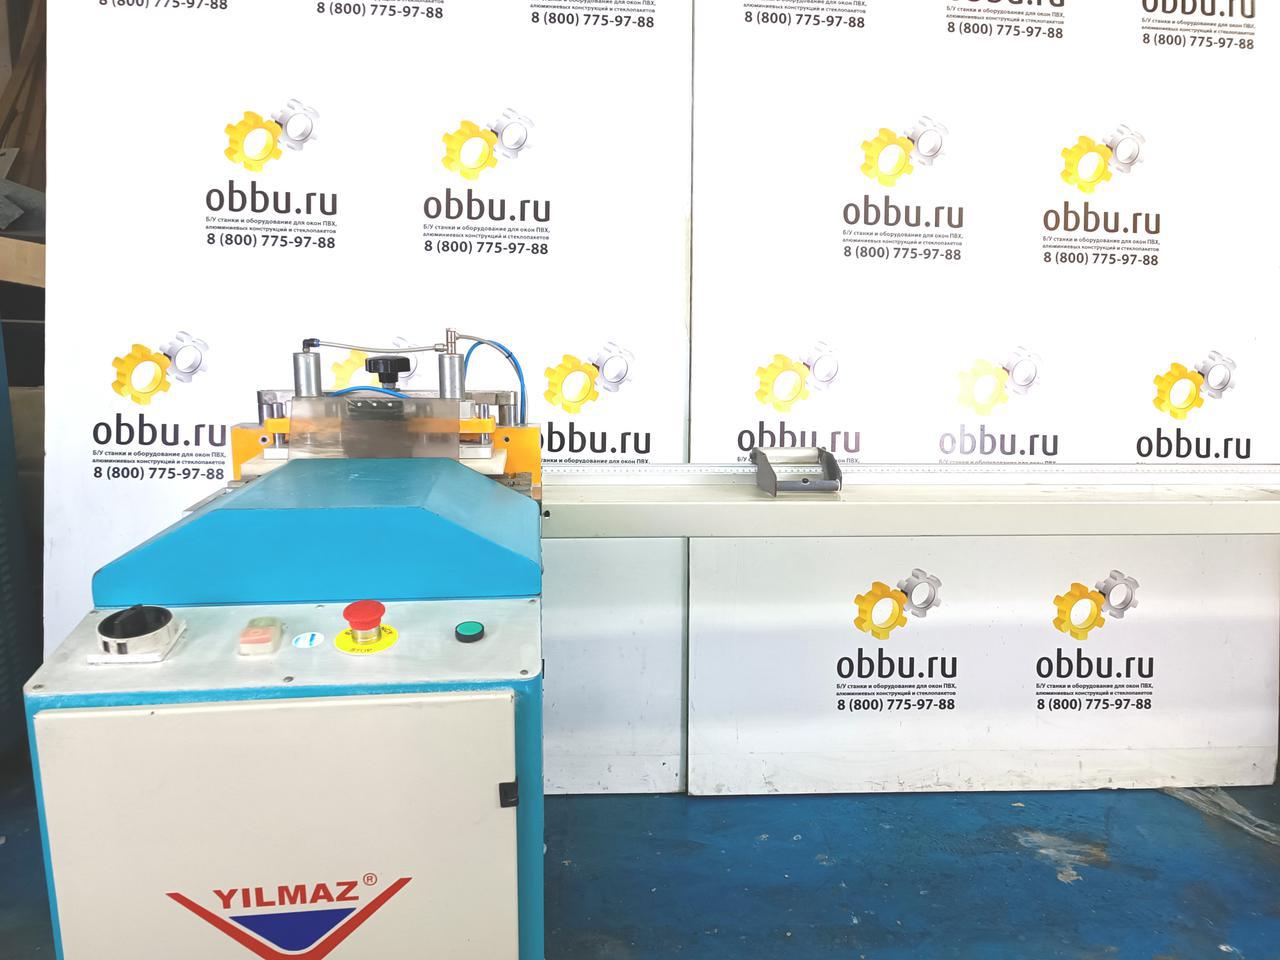 YILMAZ Одноголовочный комплект станков для производства окон ПВХ (Б/У оборудование)